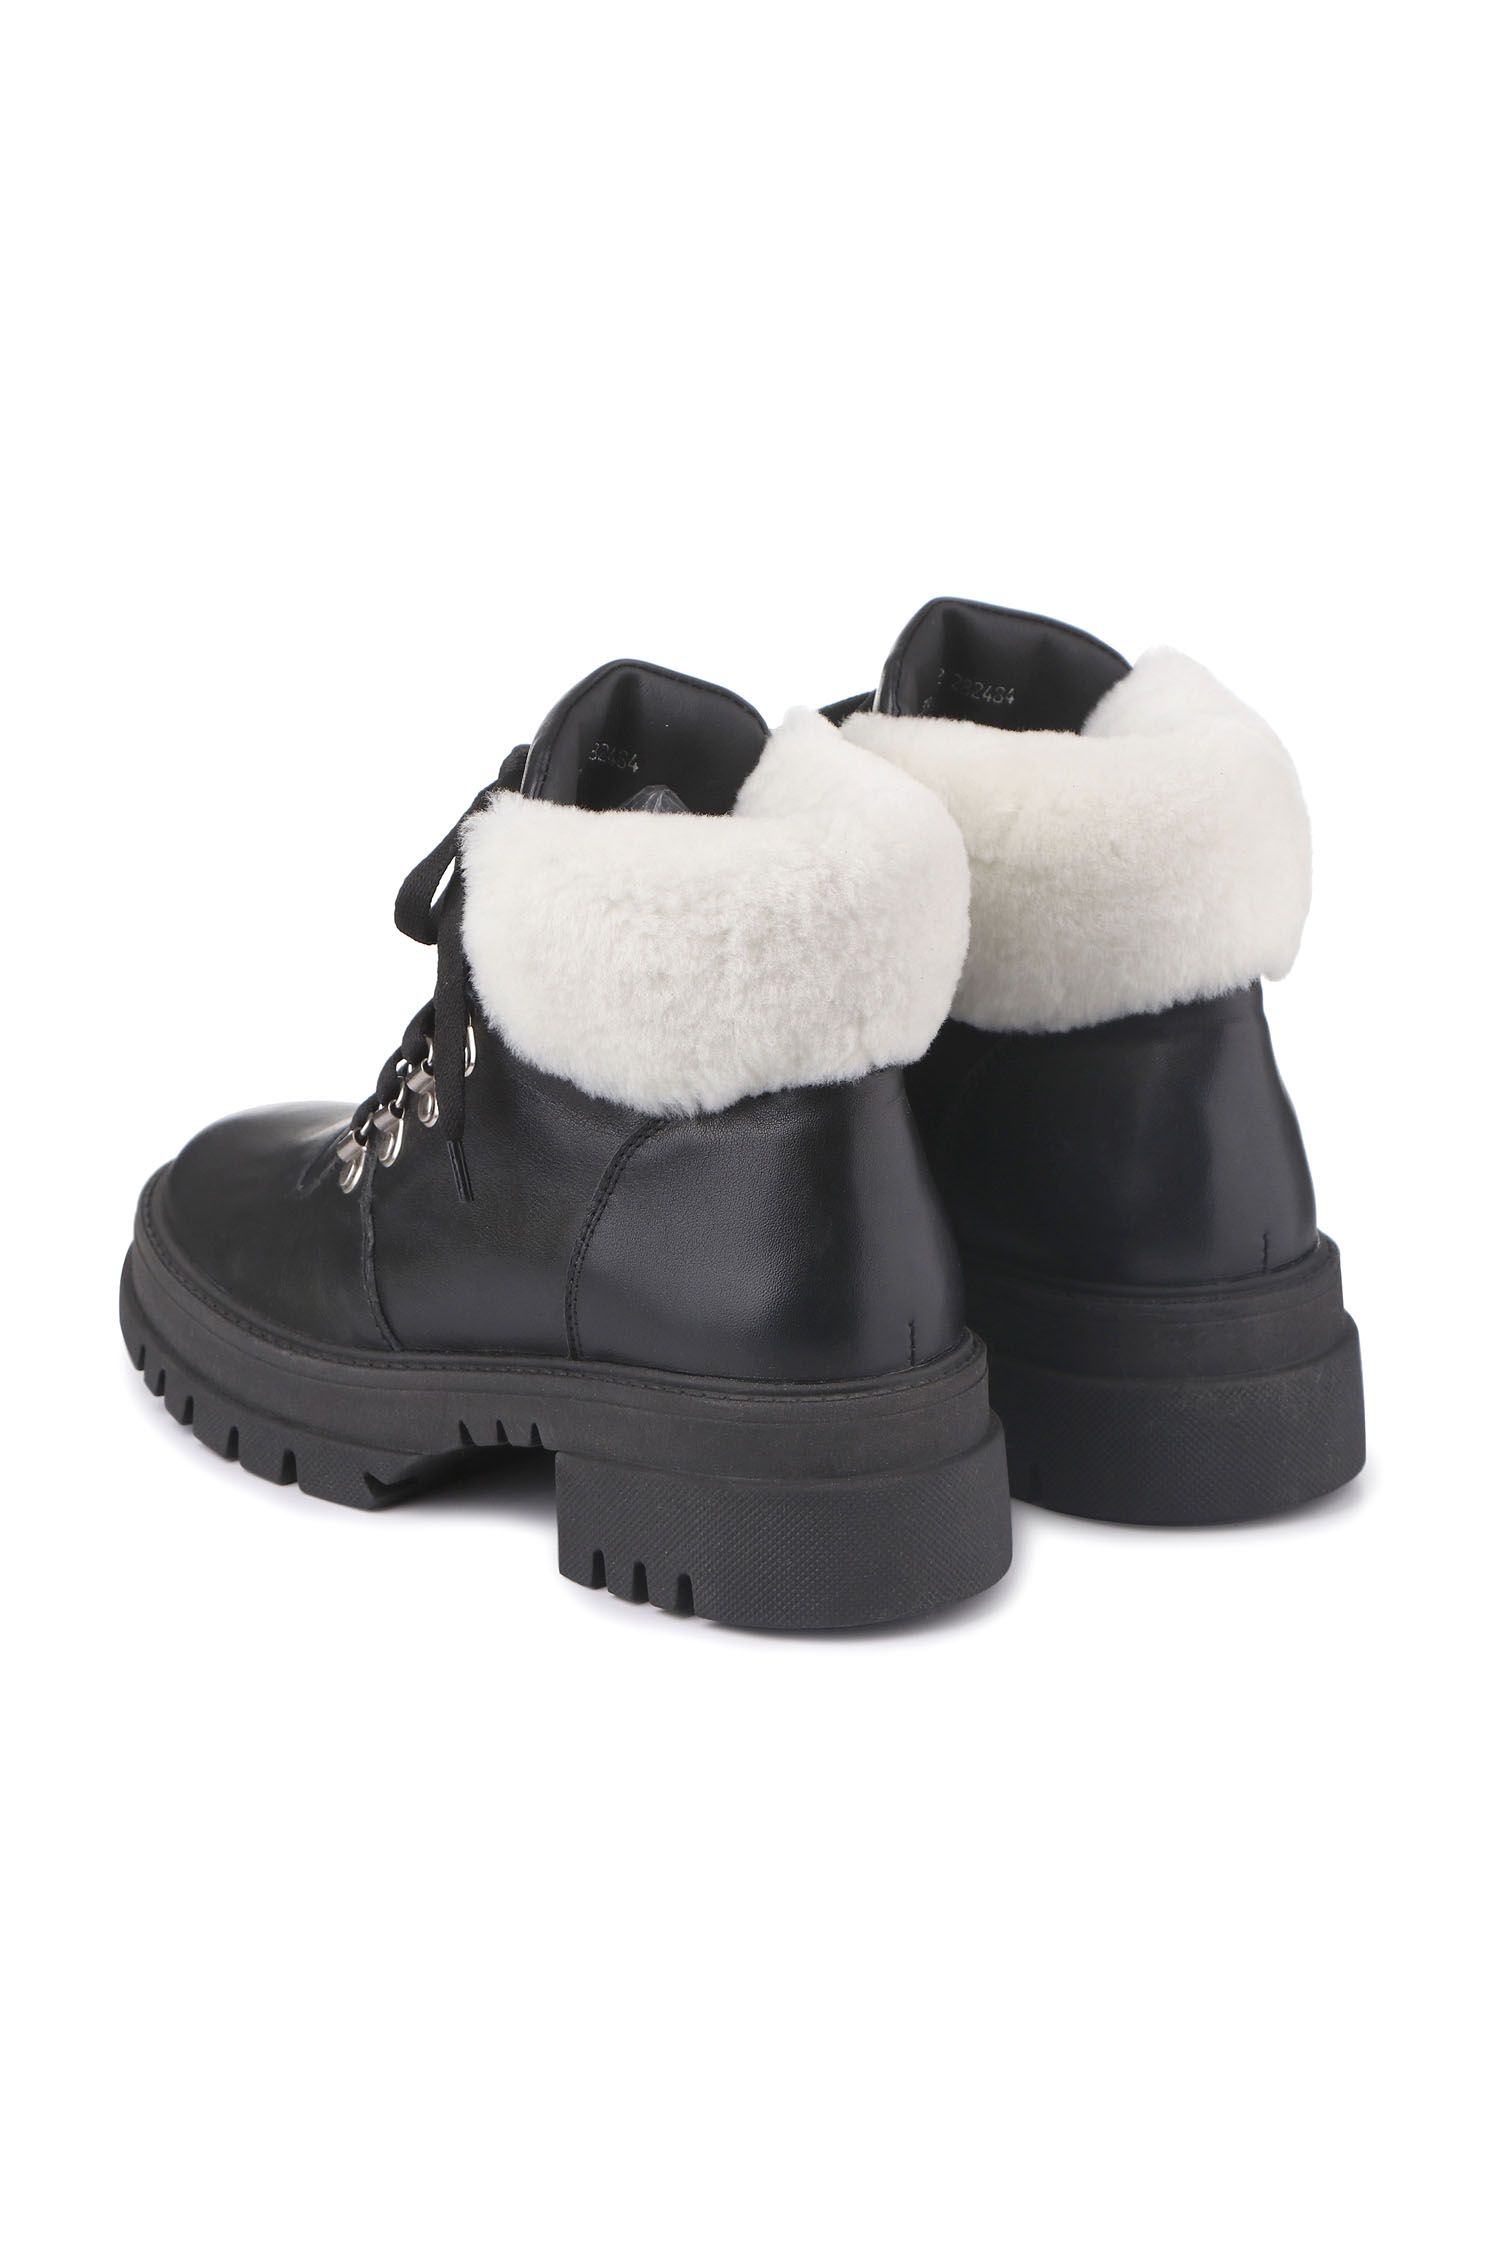 Зимові черевики Hiking boots чорні з білим хутром - THE LACE фото 123277